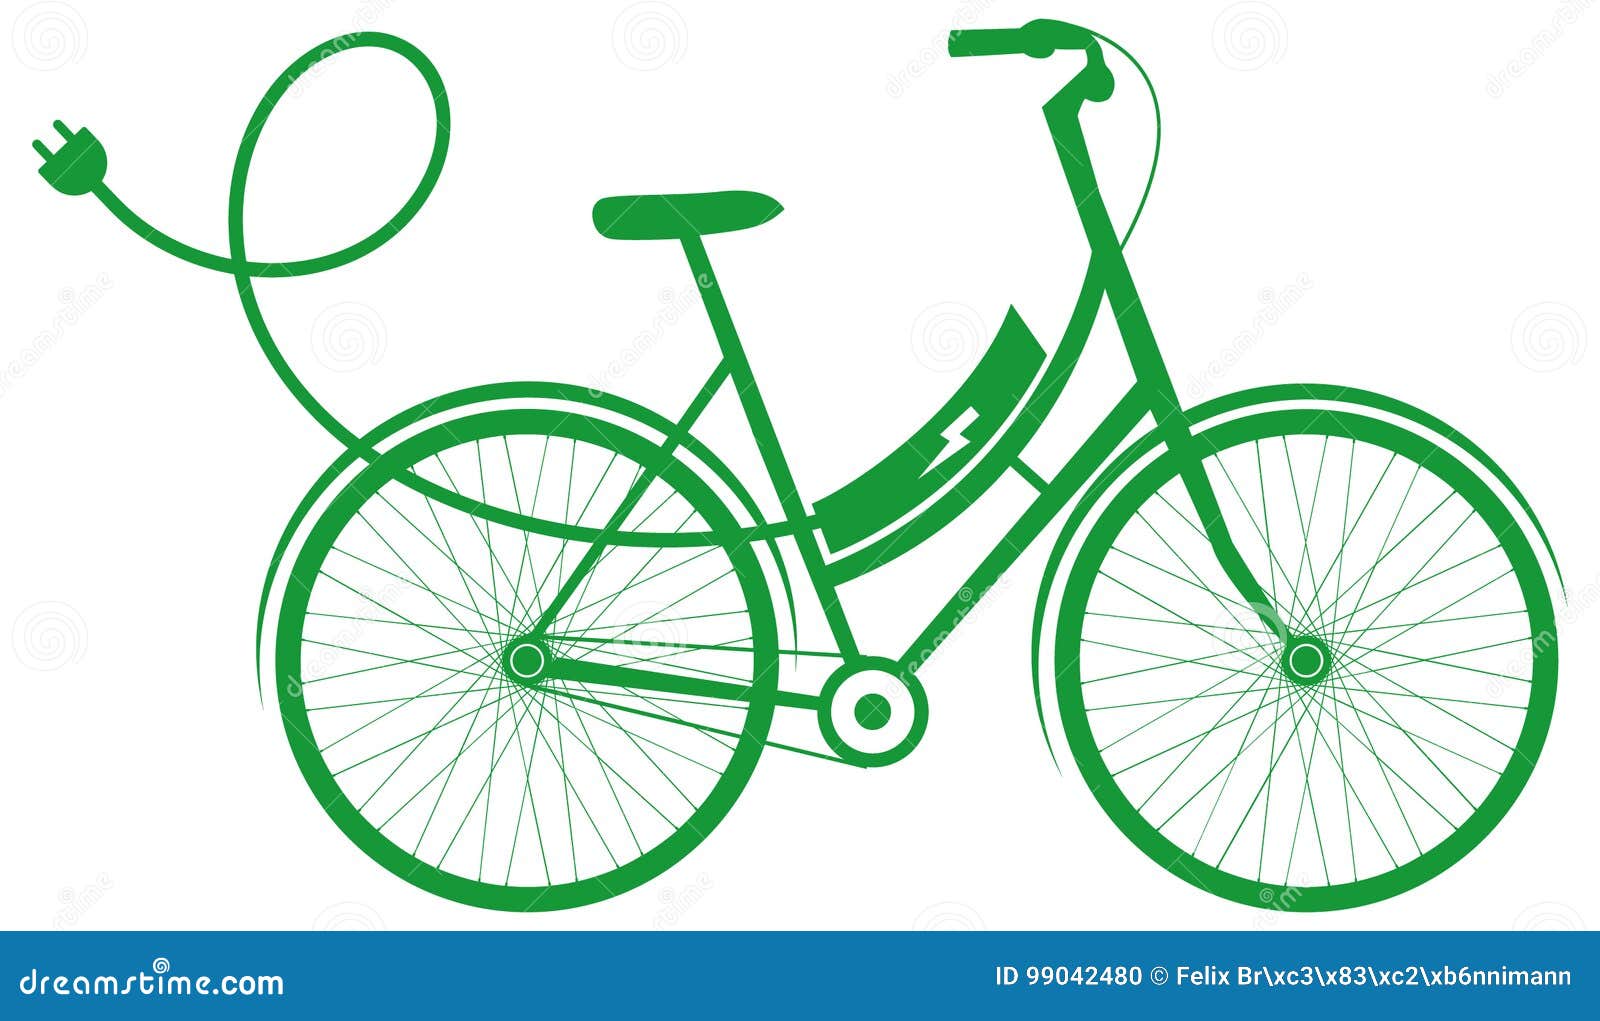 dessin bicyclette ecologique elestrique